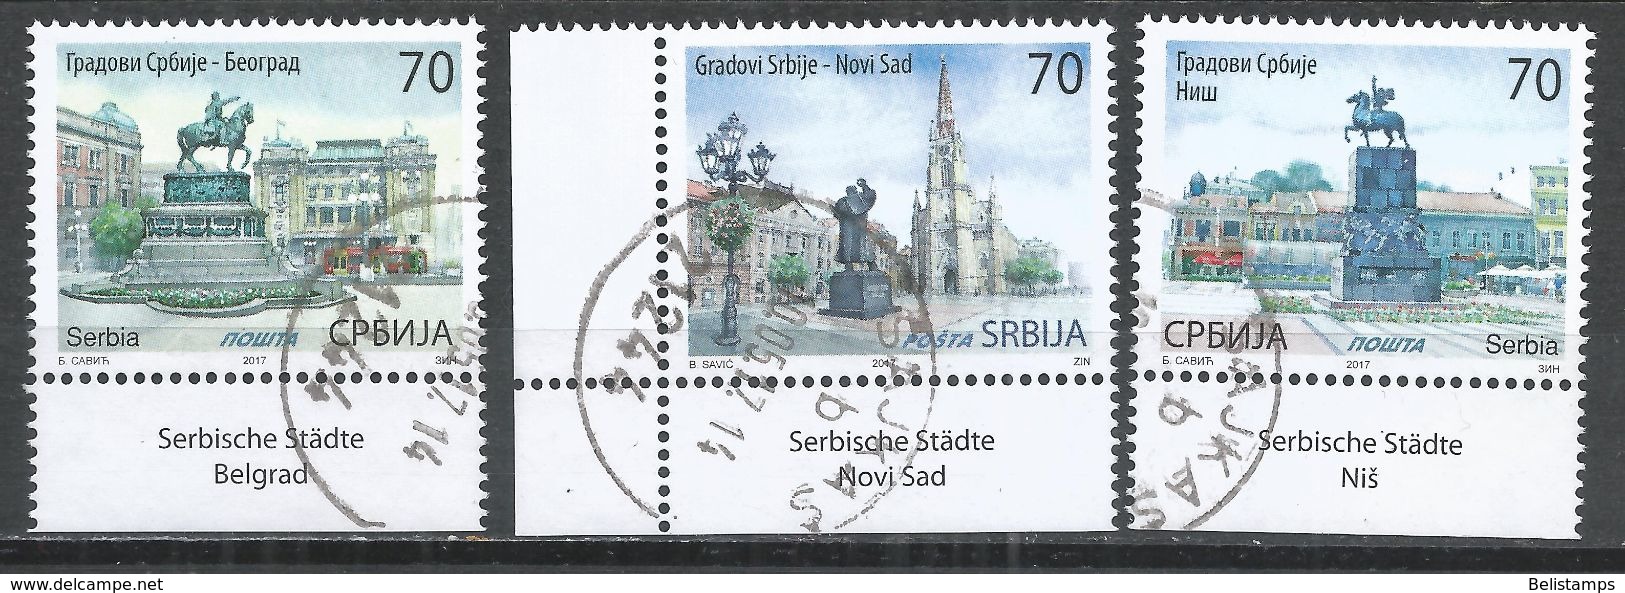 Serbia 2017. Scott #777-9 (U) Statues In Belgrade, Novi Sad And Nis  *Complete Set* - Serbie